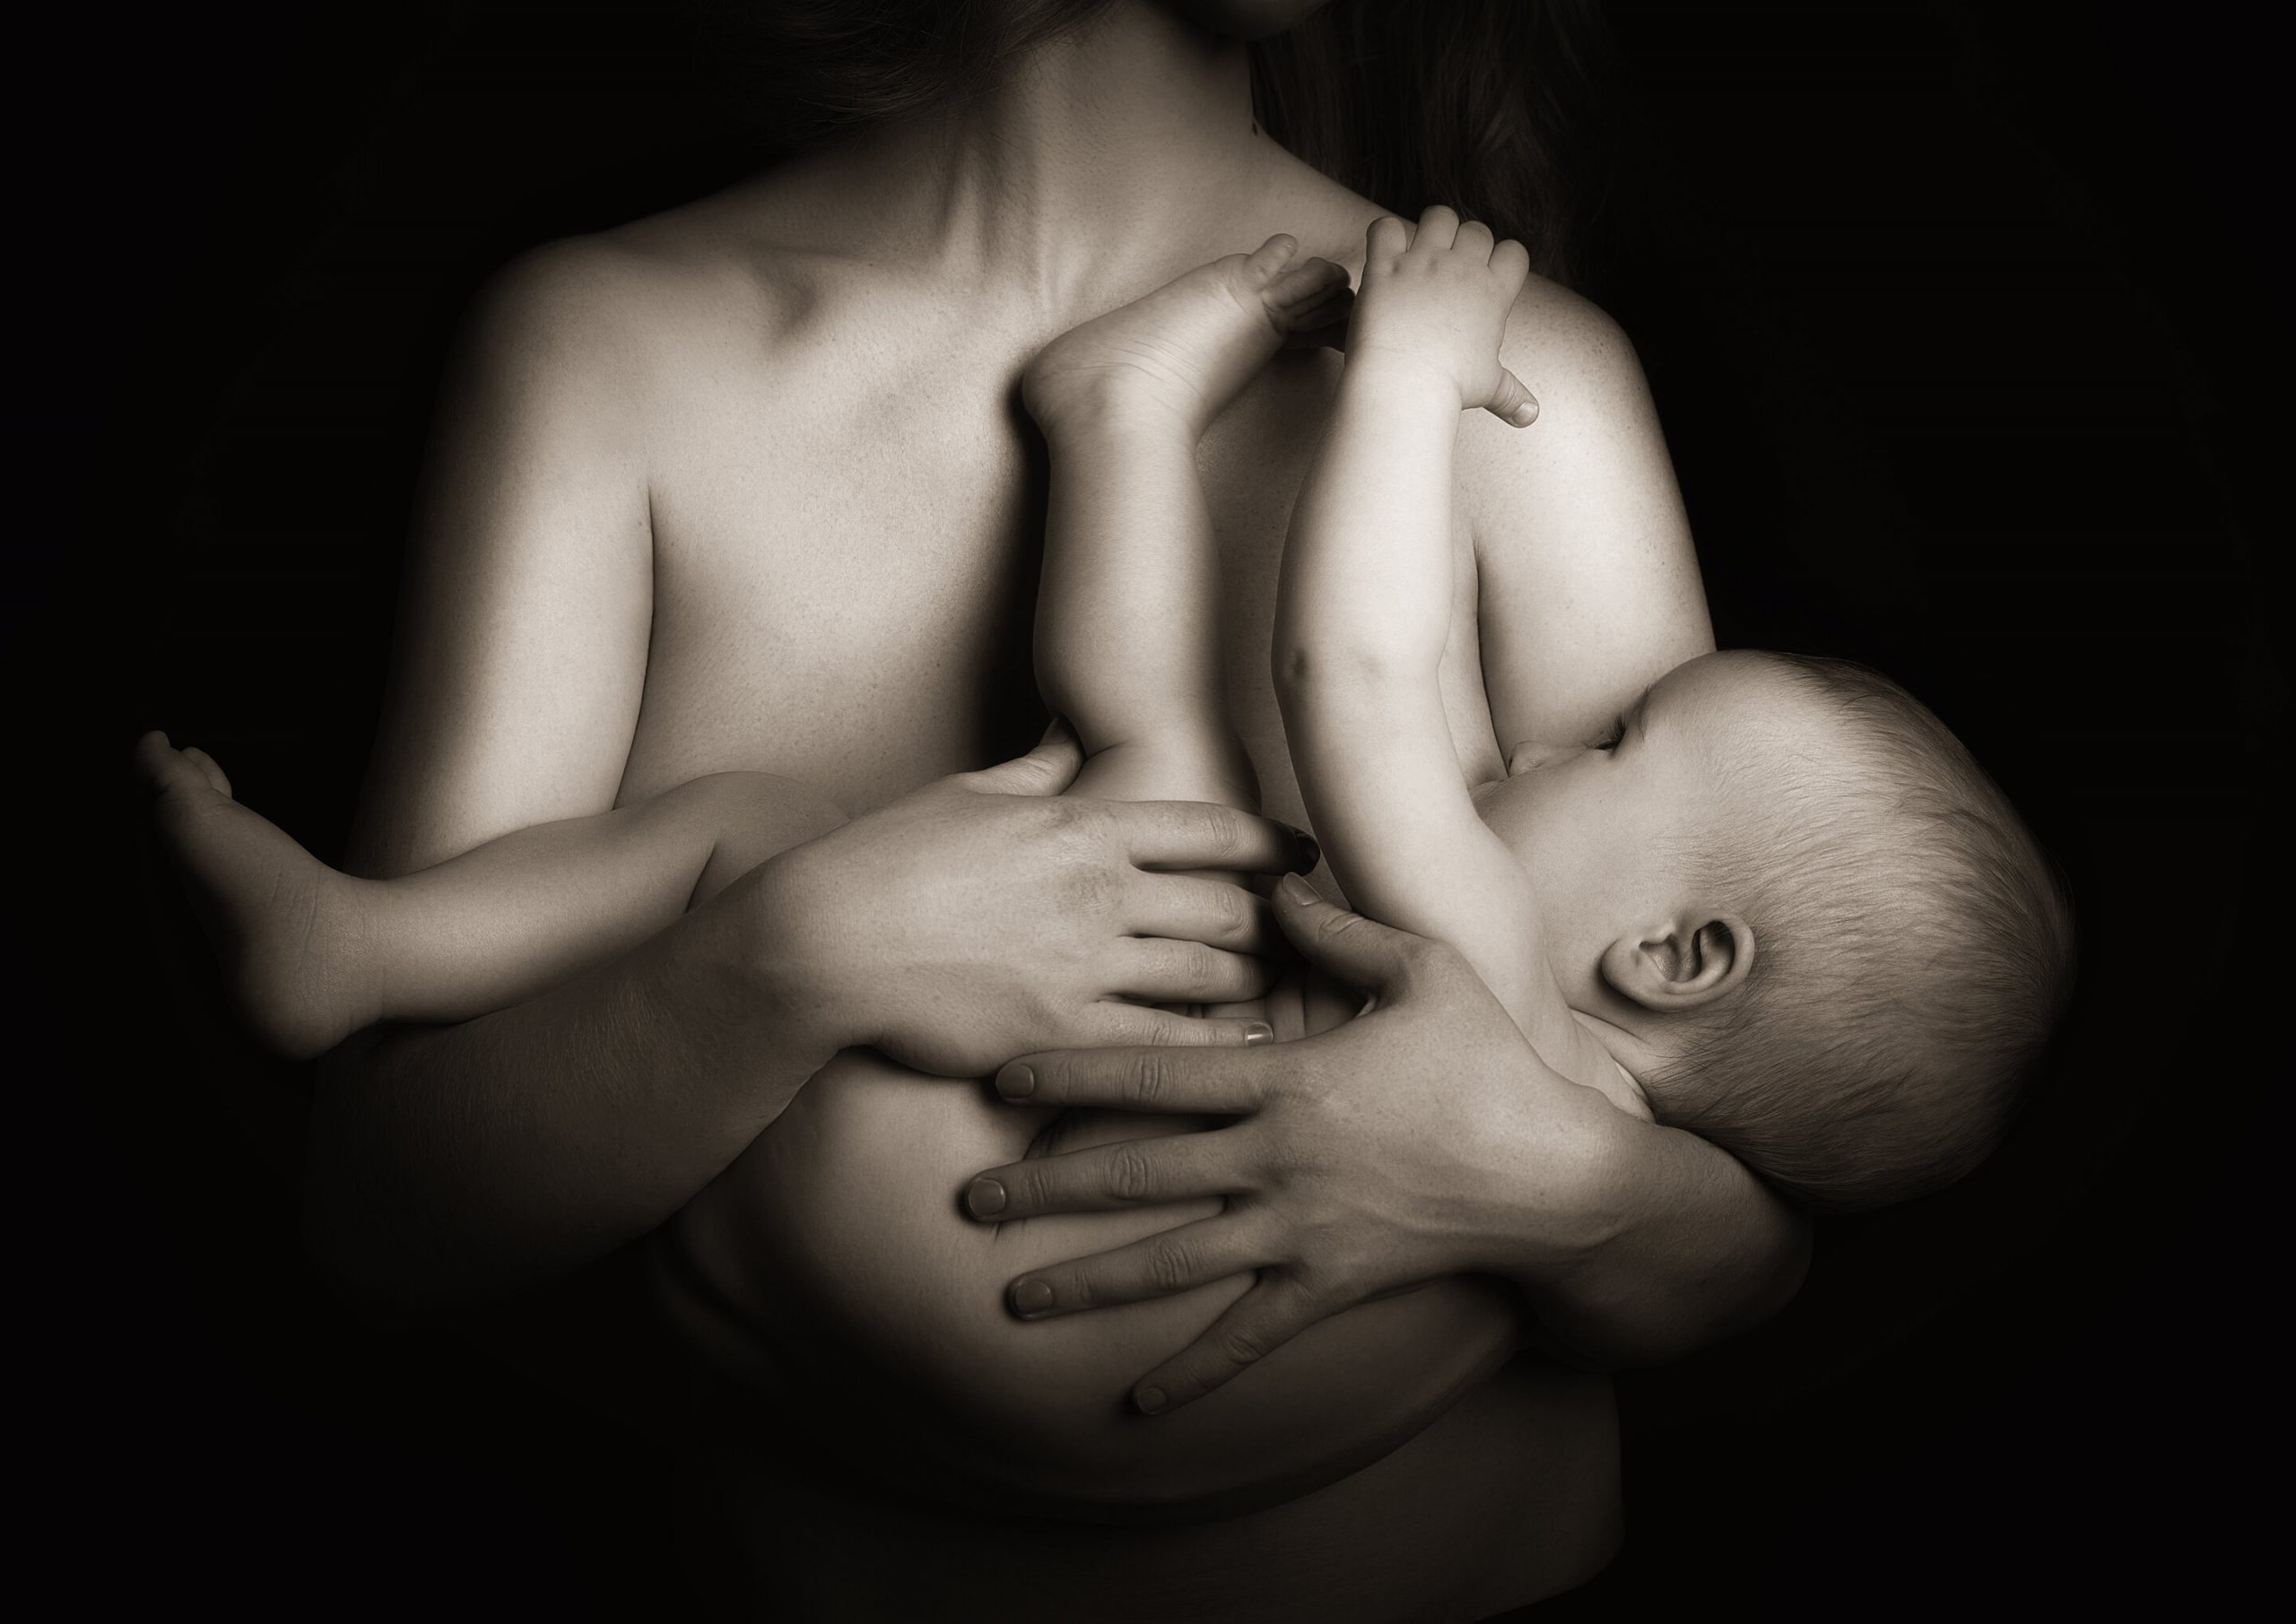 الرضاعة الطبيعية تقلل خطر الإصابة بسرطان المبيض - الرضاعة الطبيعية مرتبطة بانخفاض خطر إصابة المرأة بجميع أنواع سرطان المبيض 